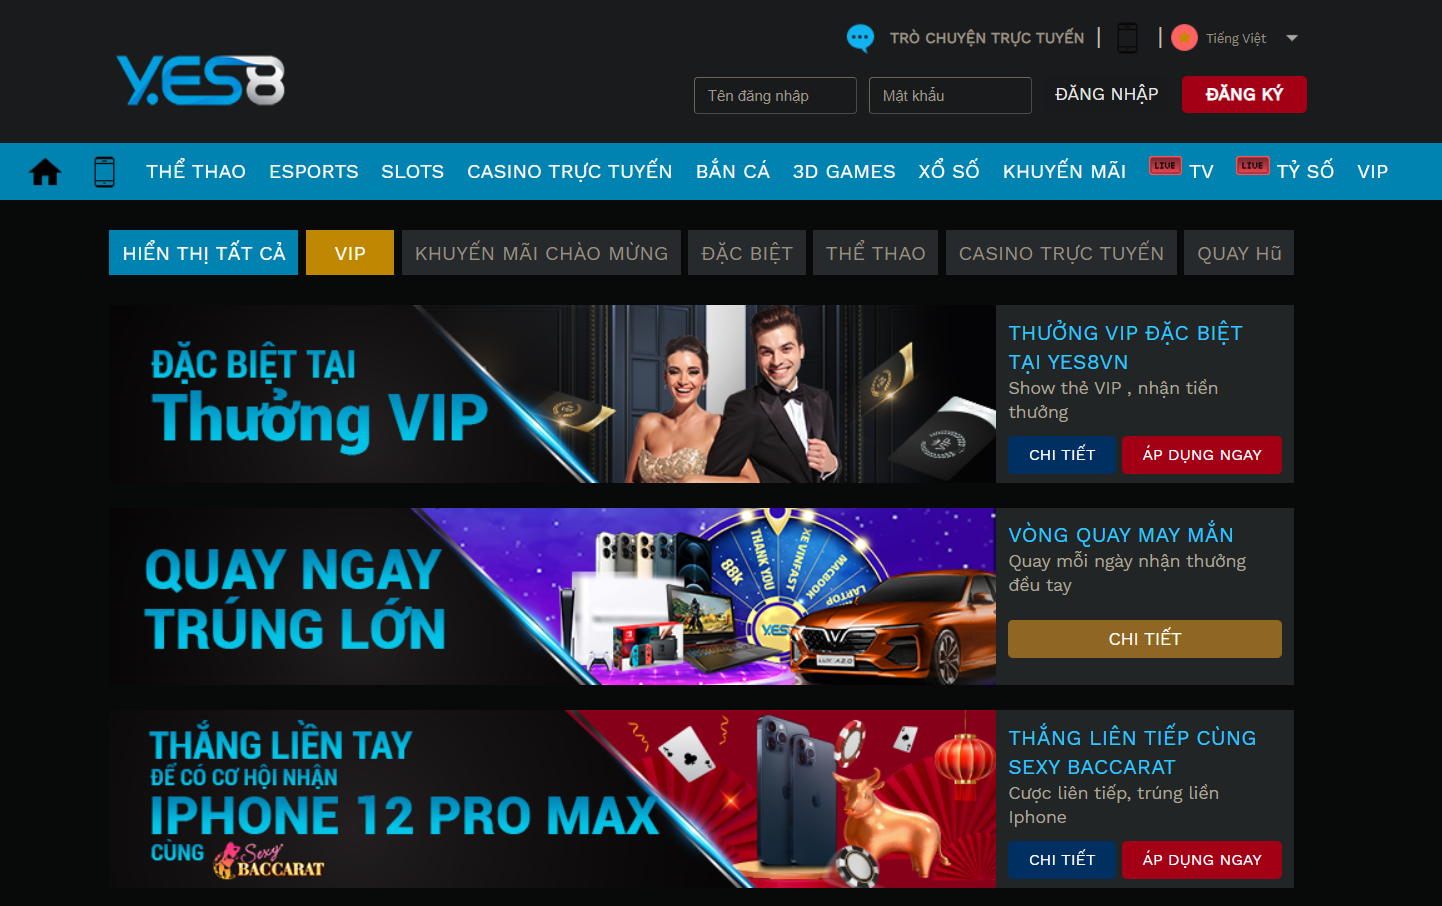 Đến với nhà cái online Yes8vn.com bạn sẽ trải nghiệm sòng bài Casino trực tuyến đỉnh cao